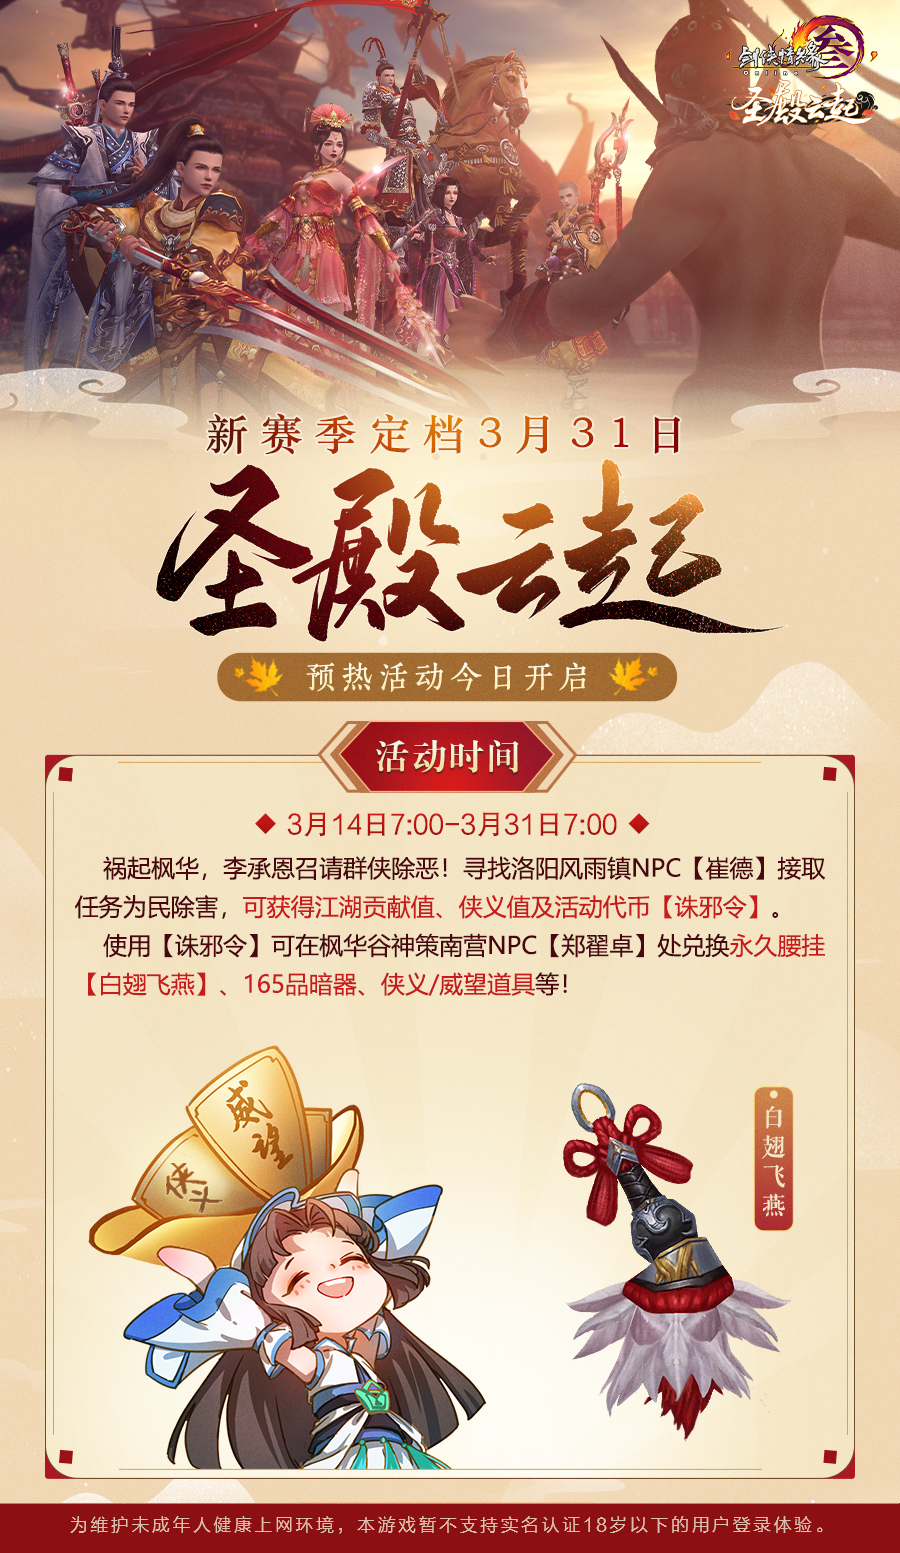 《剑网3》怀旧服新赛季定档3月31日!预热活动开启